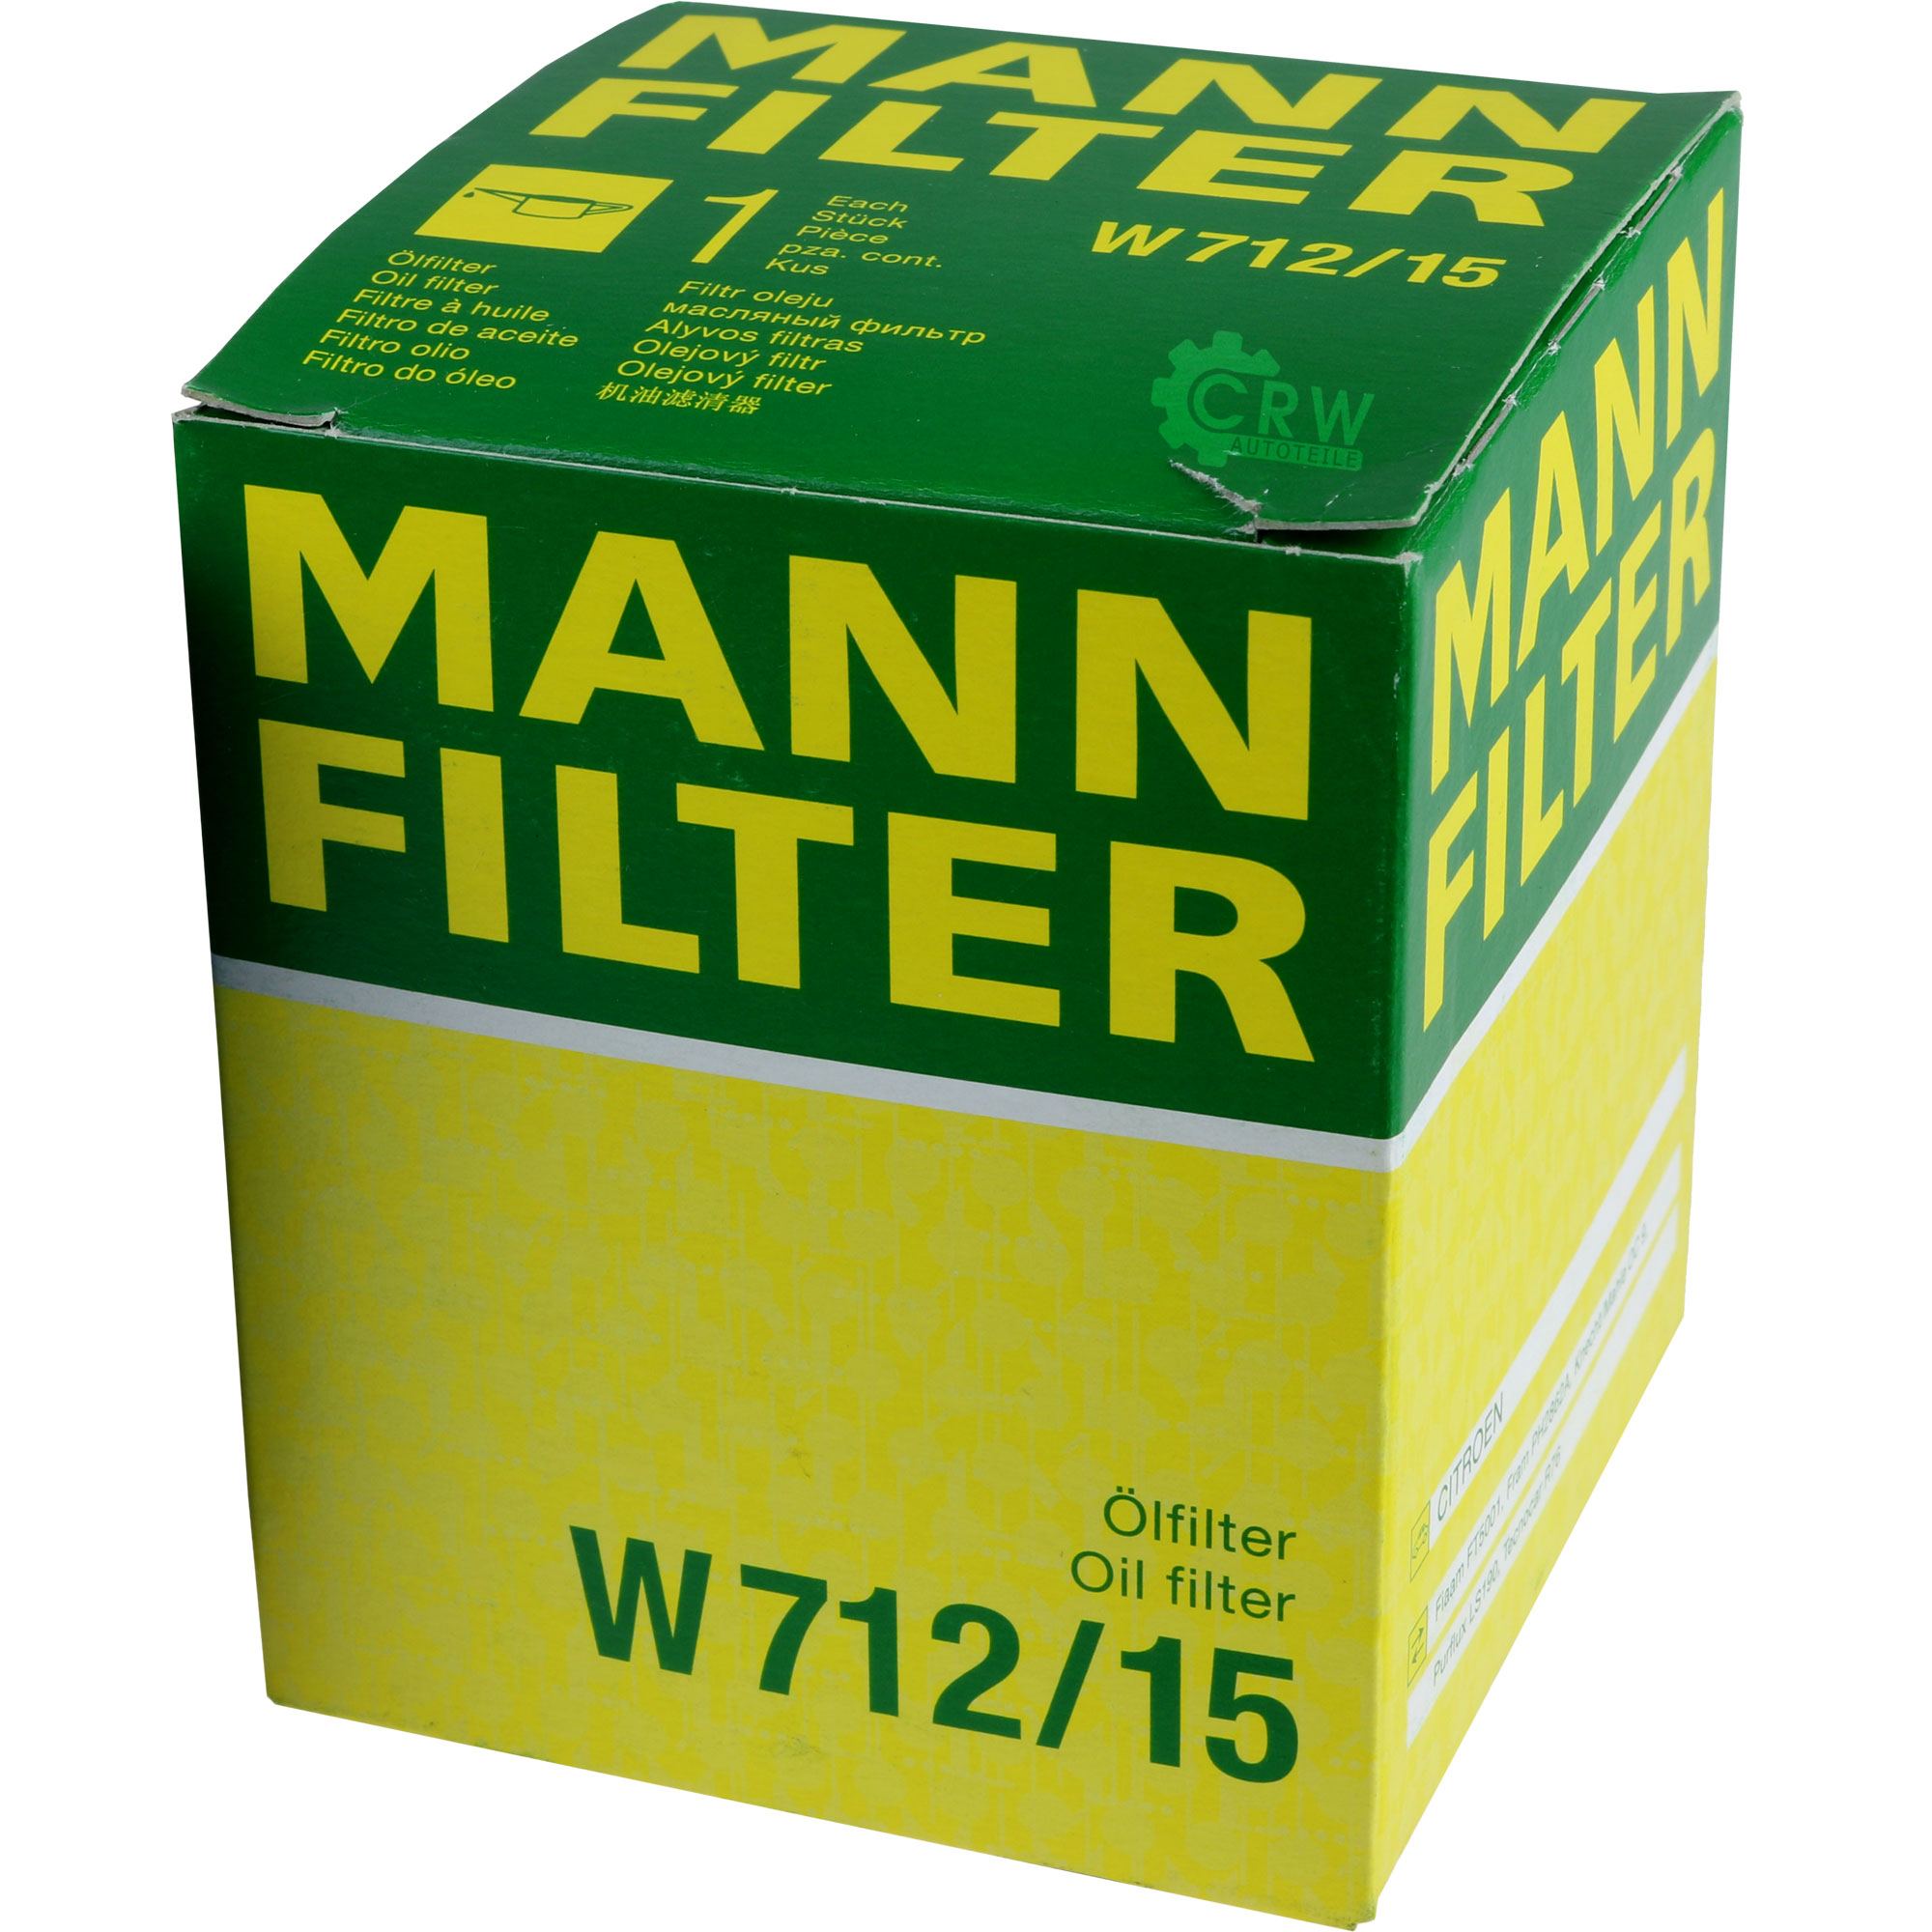 MANN-FILTER Ölfilter W 712/15 Oil Filter